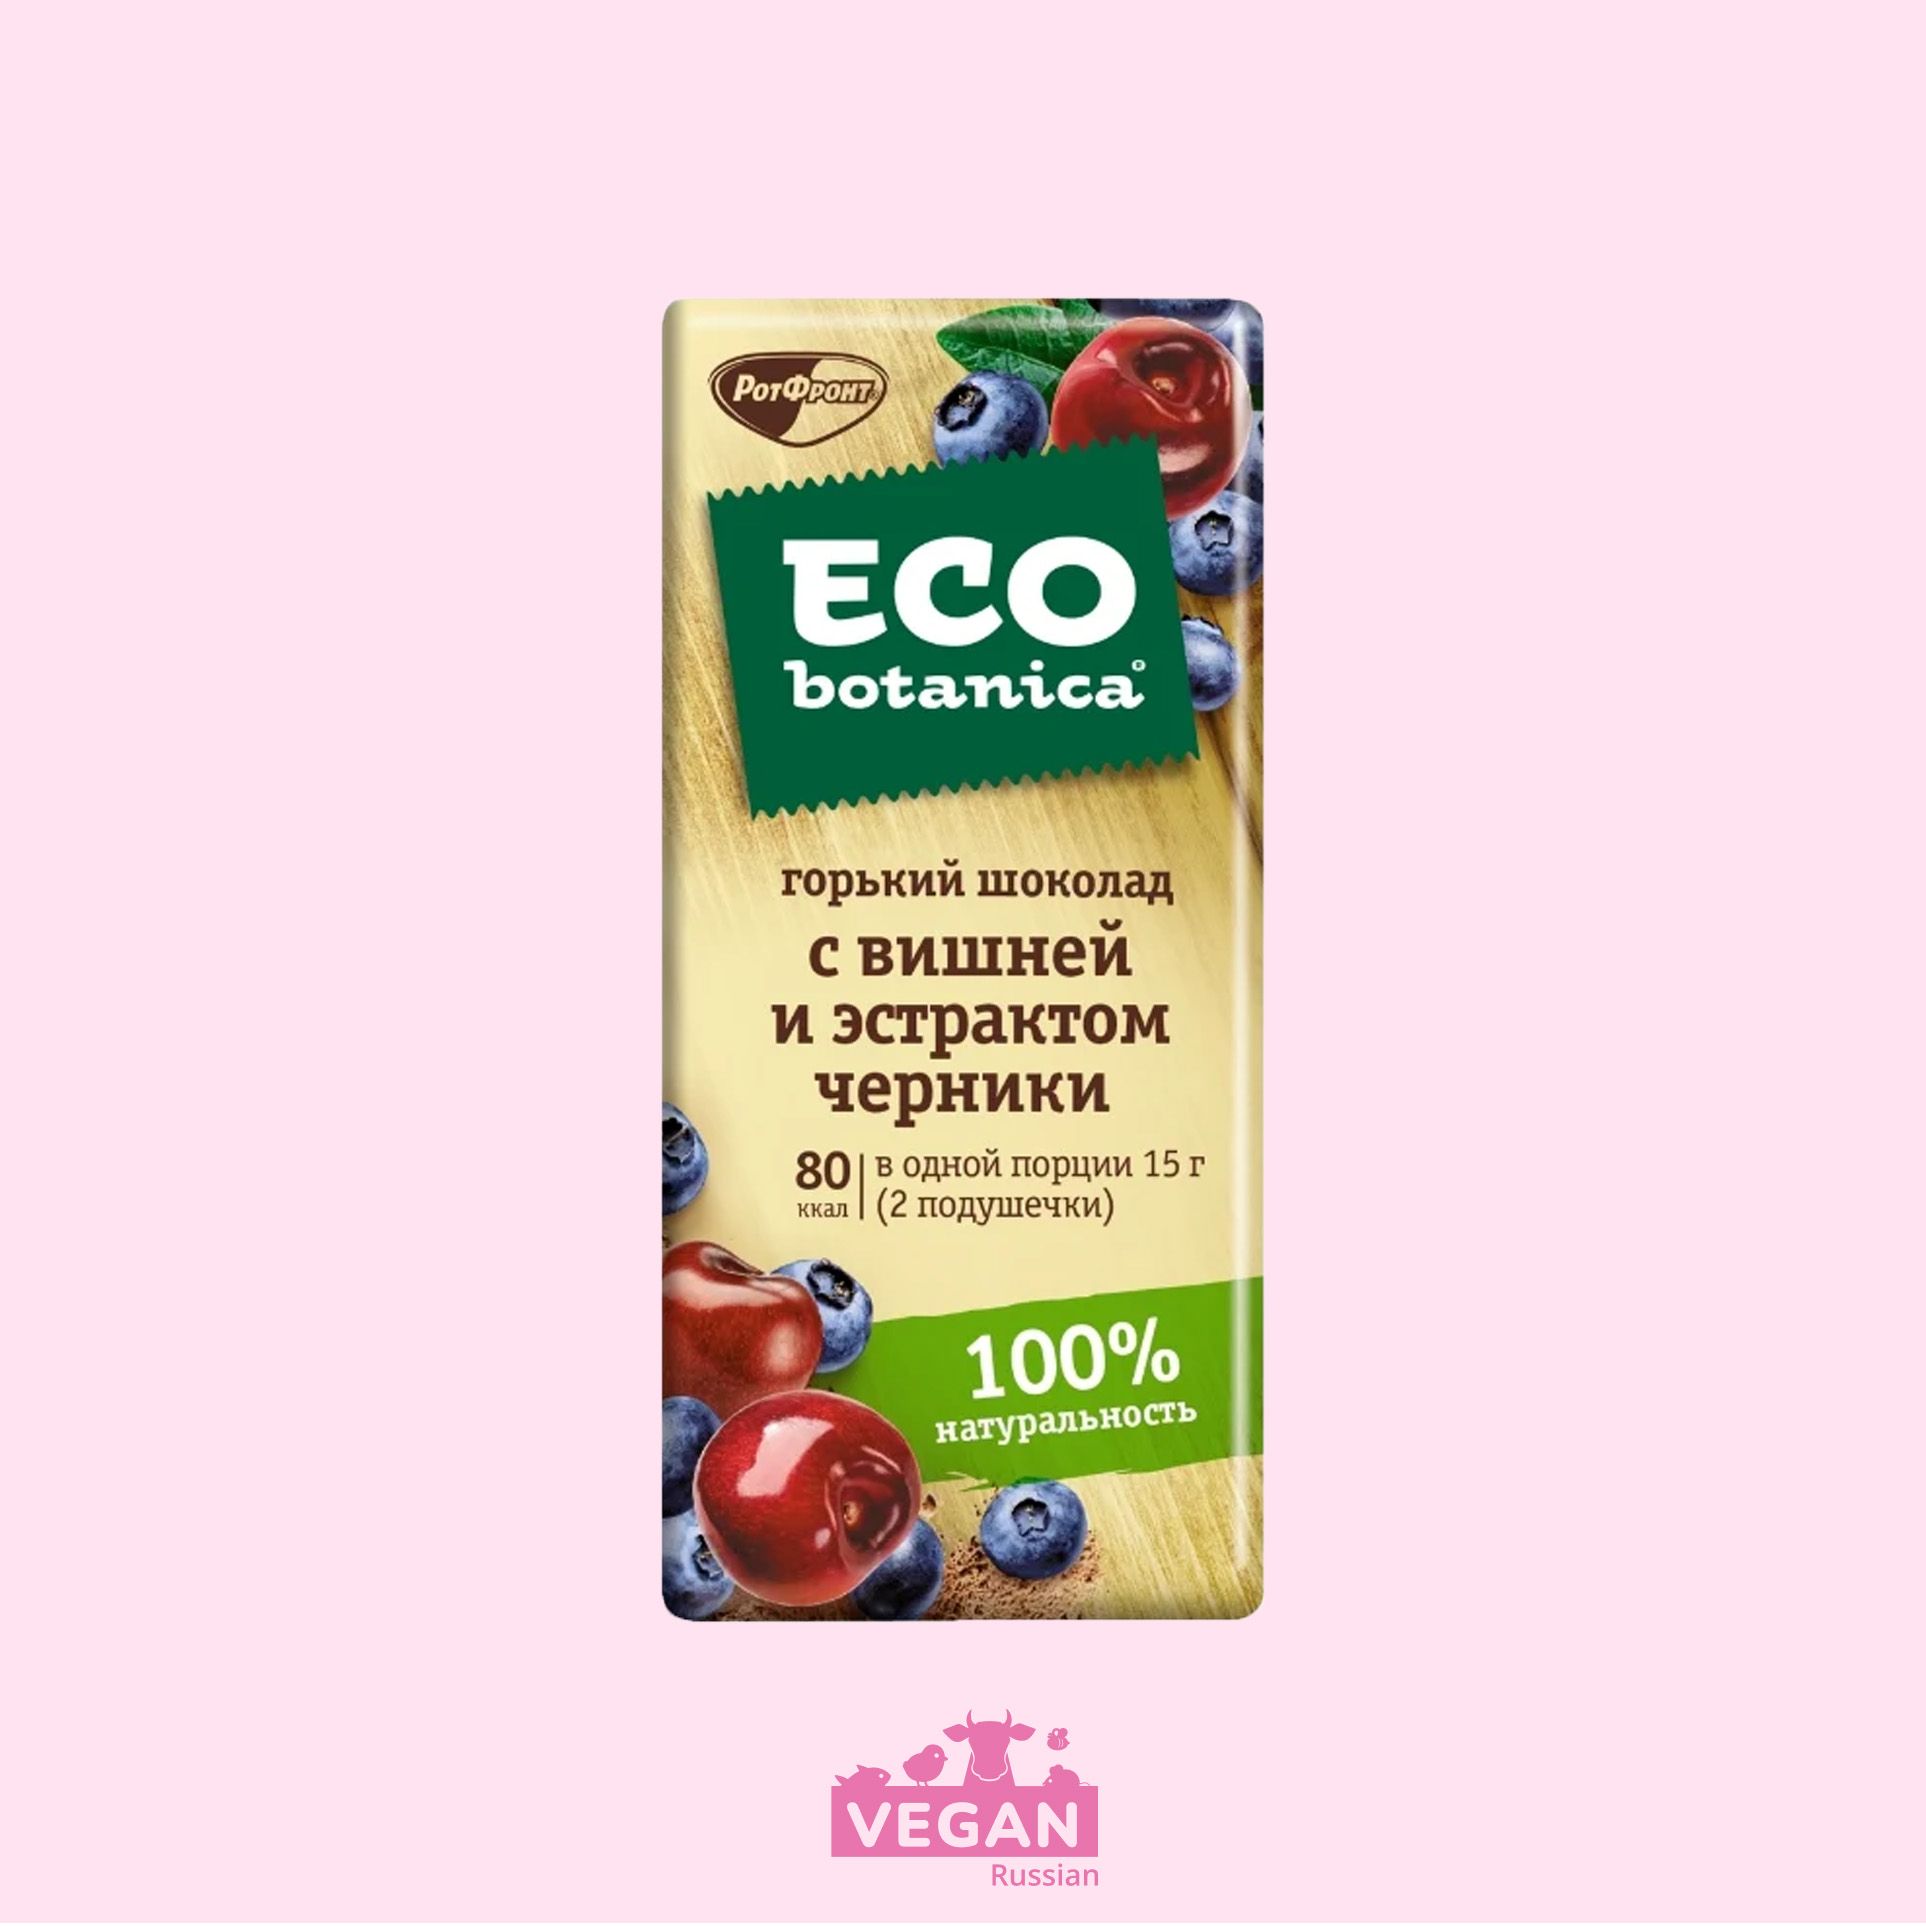 Шоколад горький вишня и экстракт черники Eco botanica 85 г